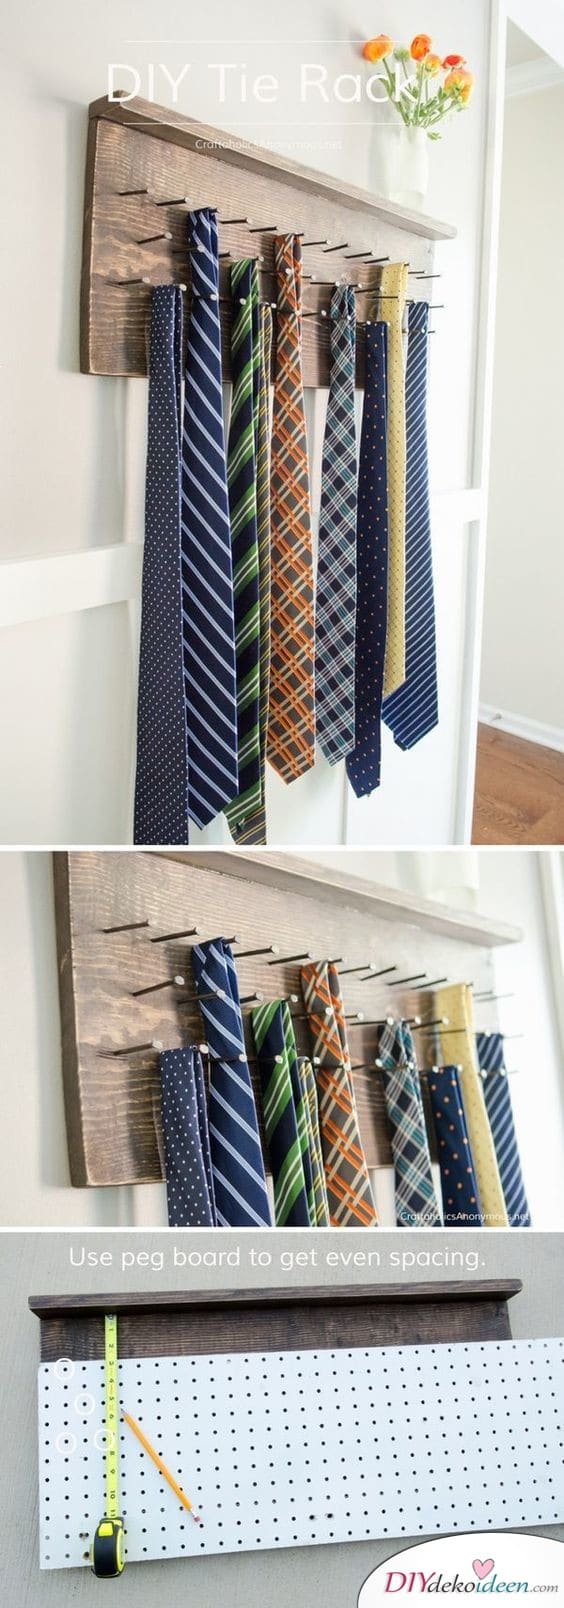 Krawattenaufhänger - ausgefallene Geschenke für Männer